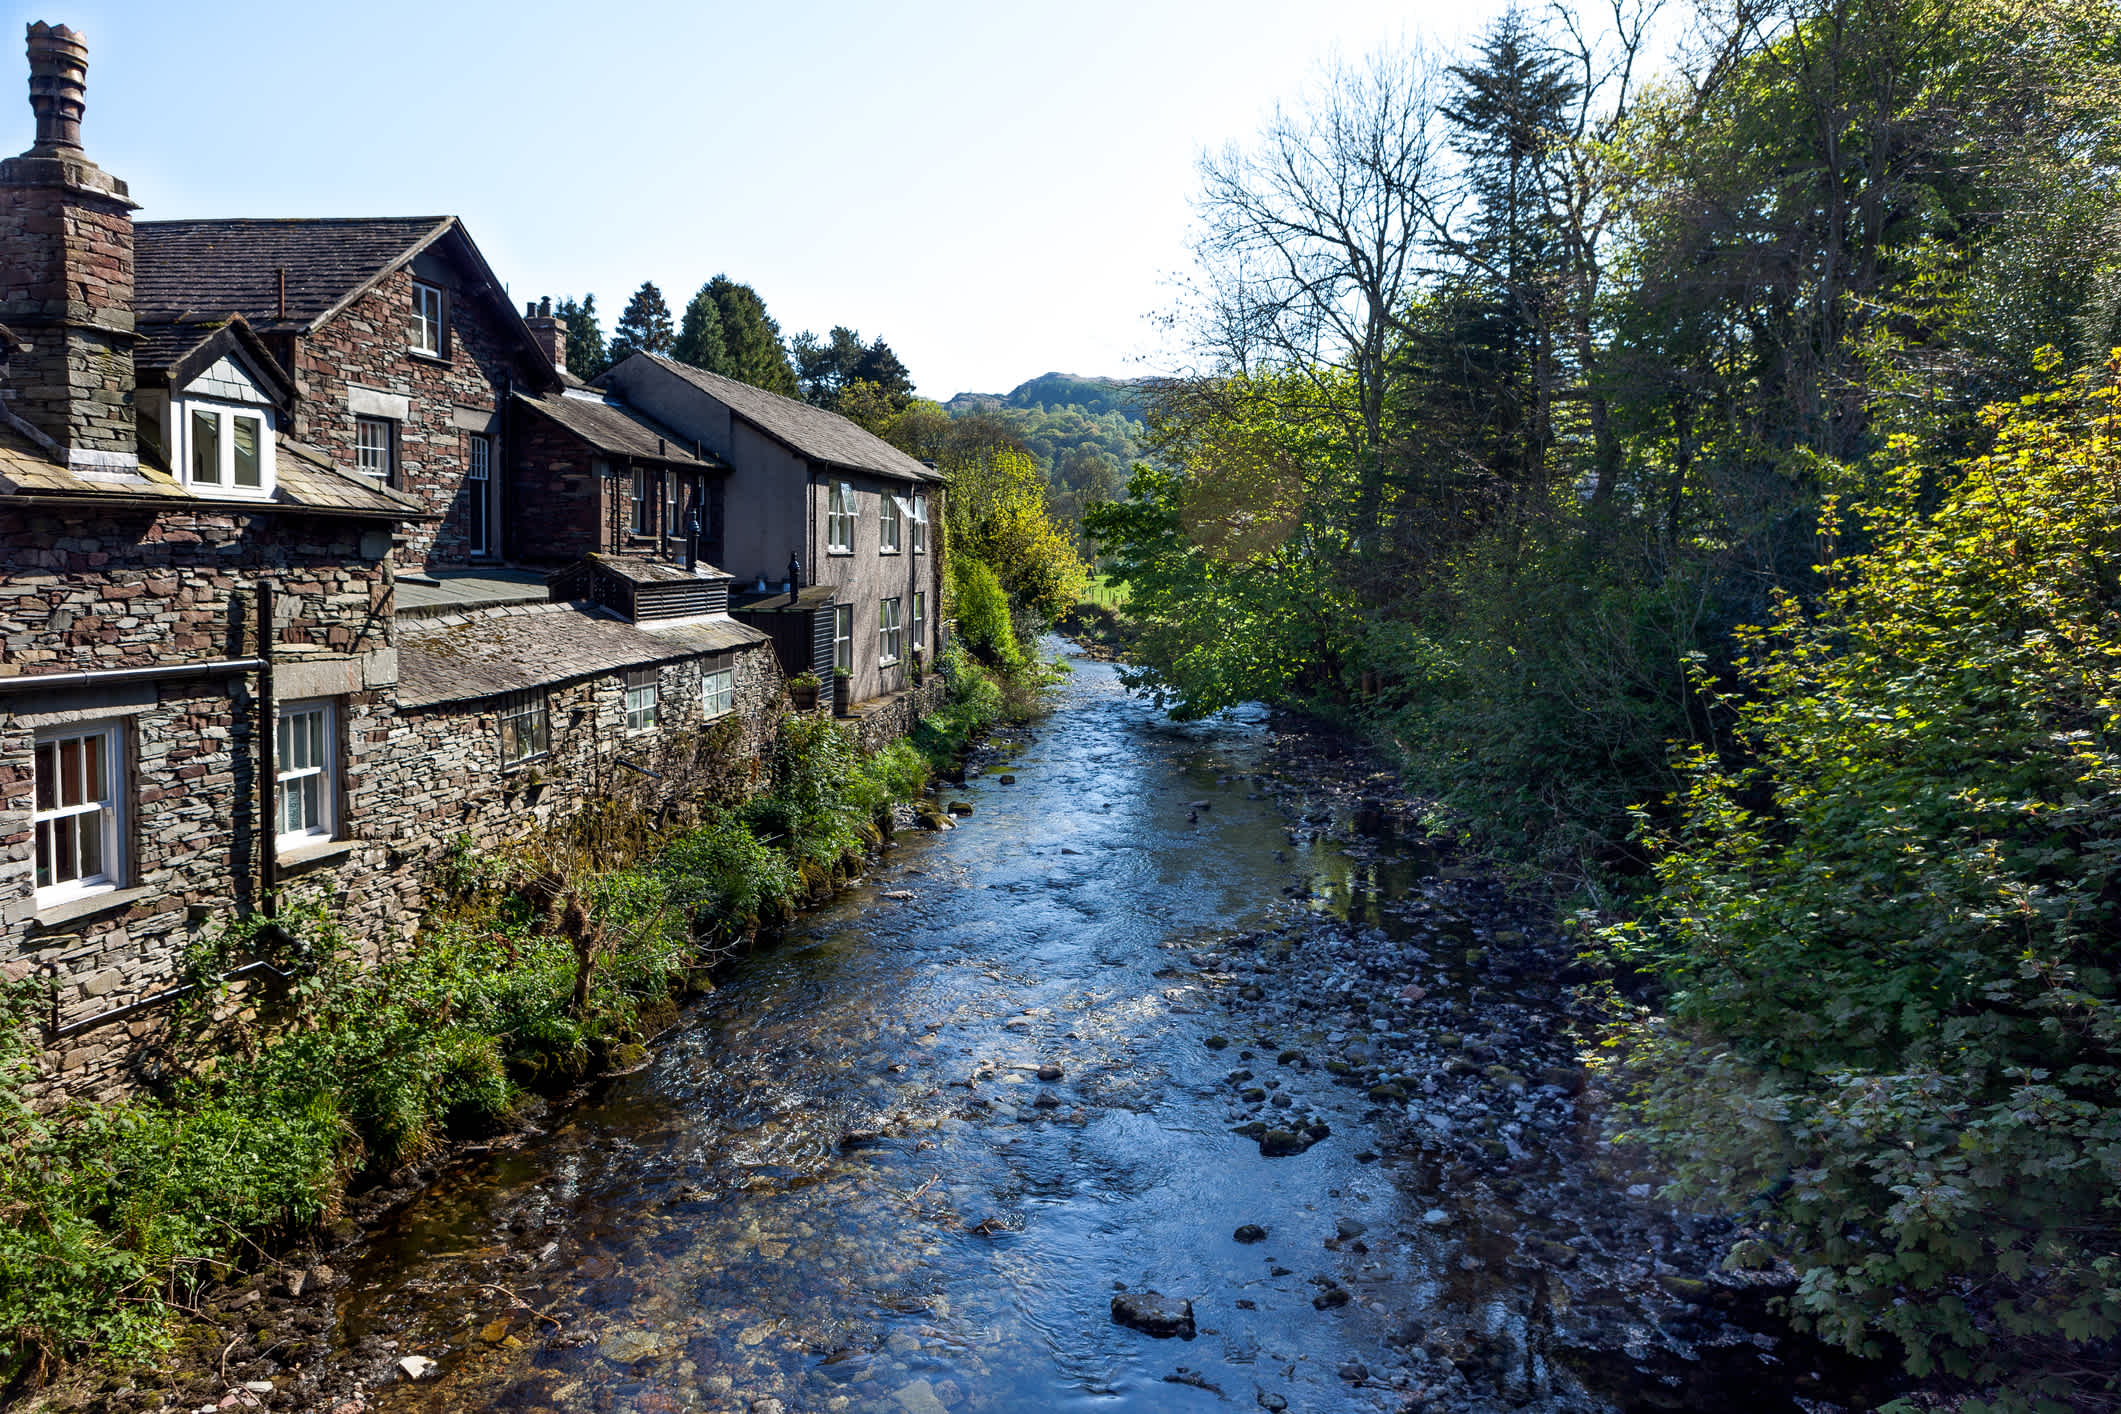 Das malerische Dorf Grasmere im Lake District in England liegt zwischen Fjälls, Wäldern und Teichen